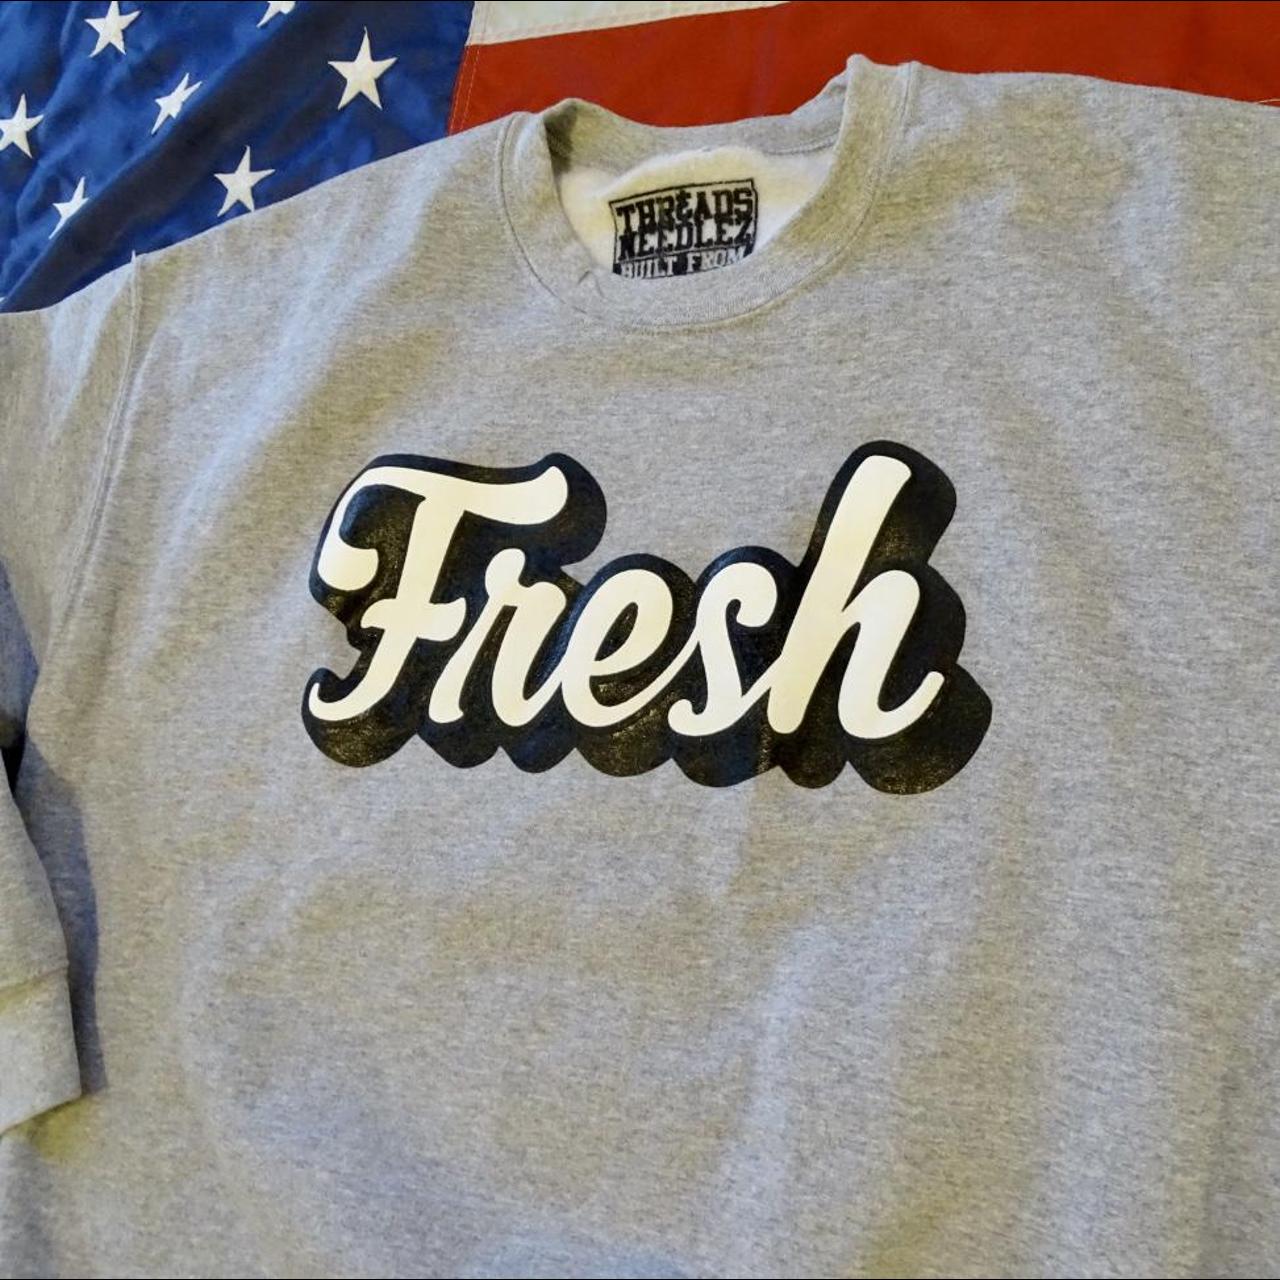 Product Image 3 - Fresh Crewneck sweatshirt. Free shipping.

Size